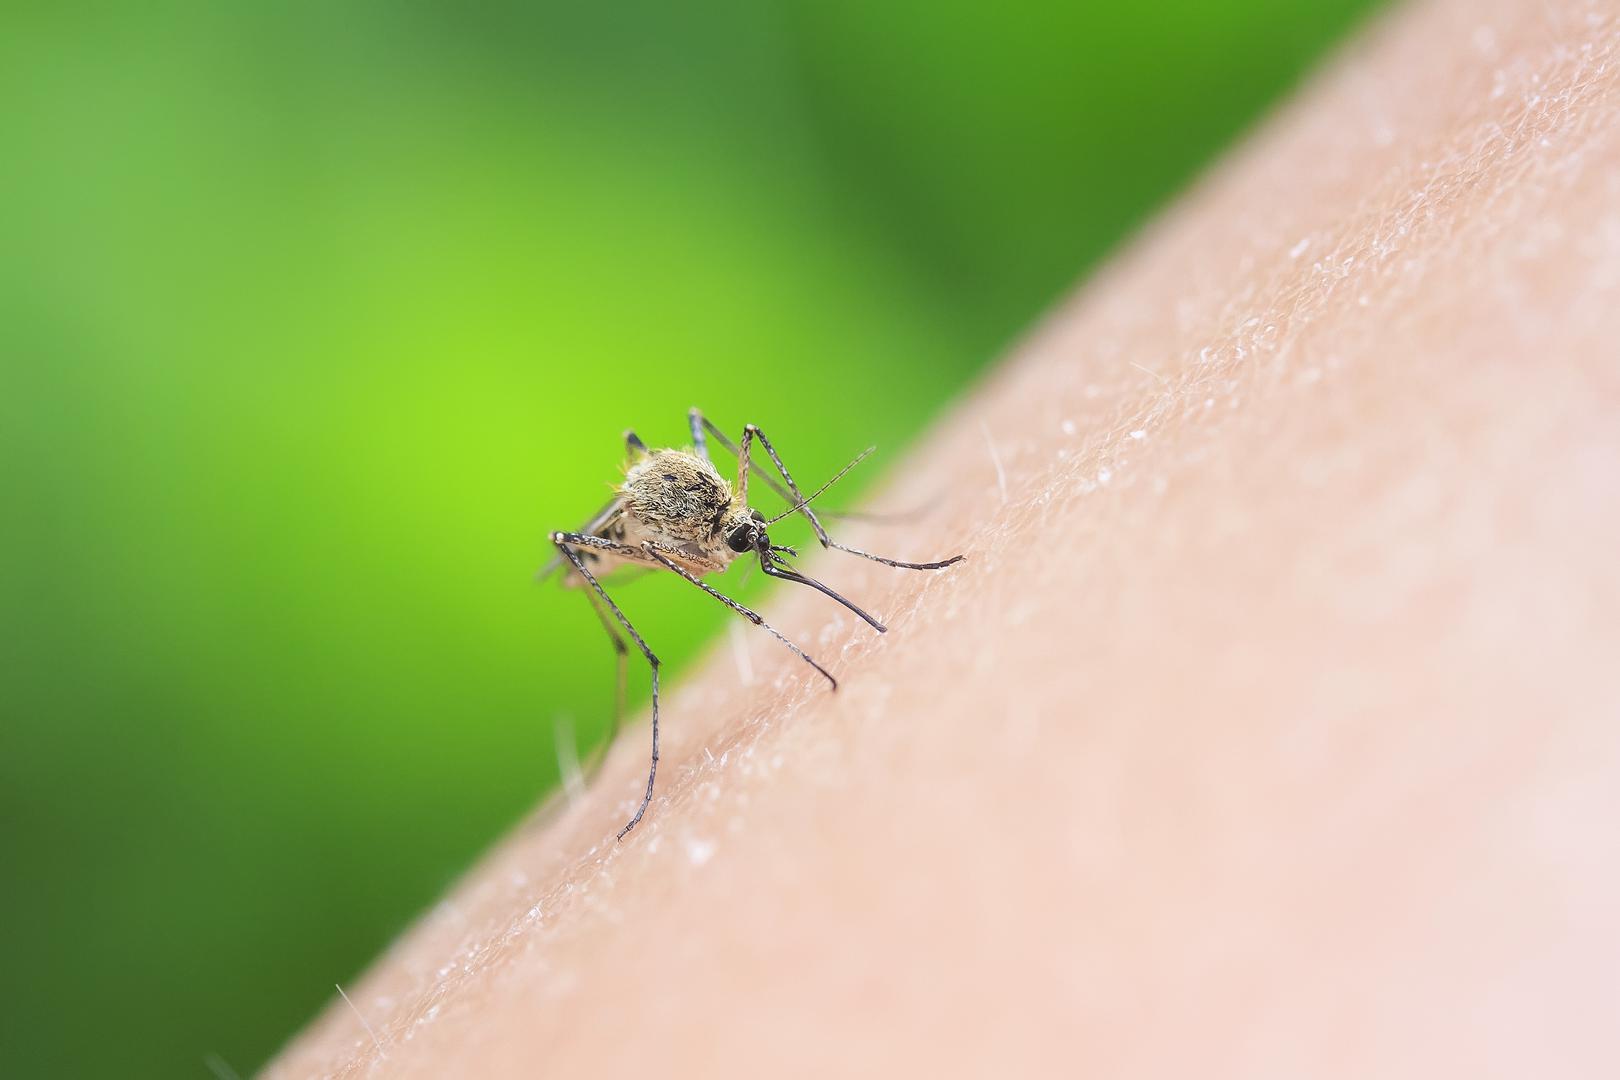 Unatoč sprejevima ili kremama za zaštitu od komaraca, jedan uvijek nađe put do vaše kože i ugrize vas? Ako je to tako, vi ste osoba koju komarci posebno vole, no jeste li se ikada zapitali zbog čega je to tako.